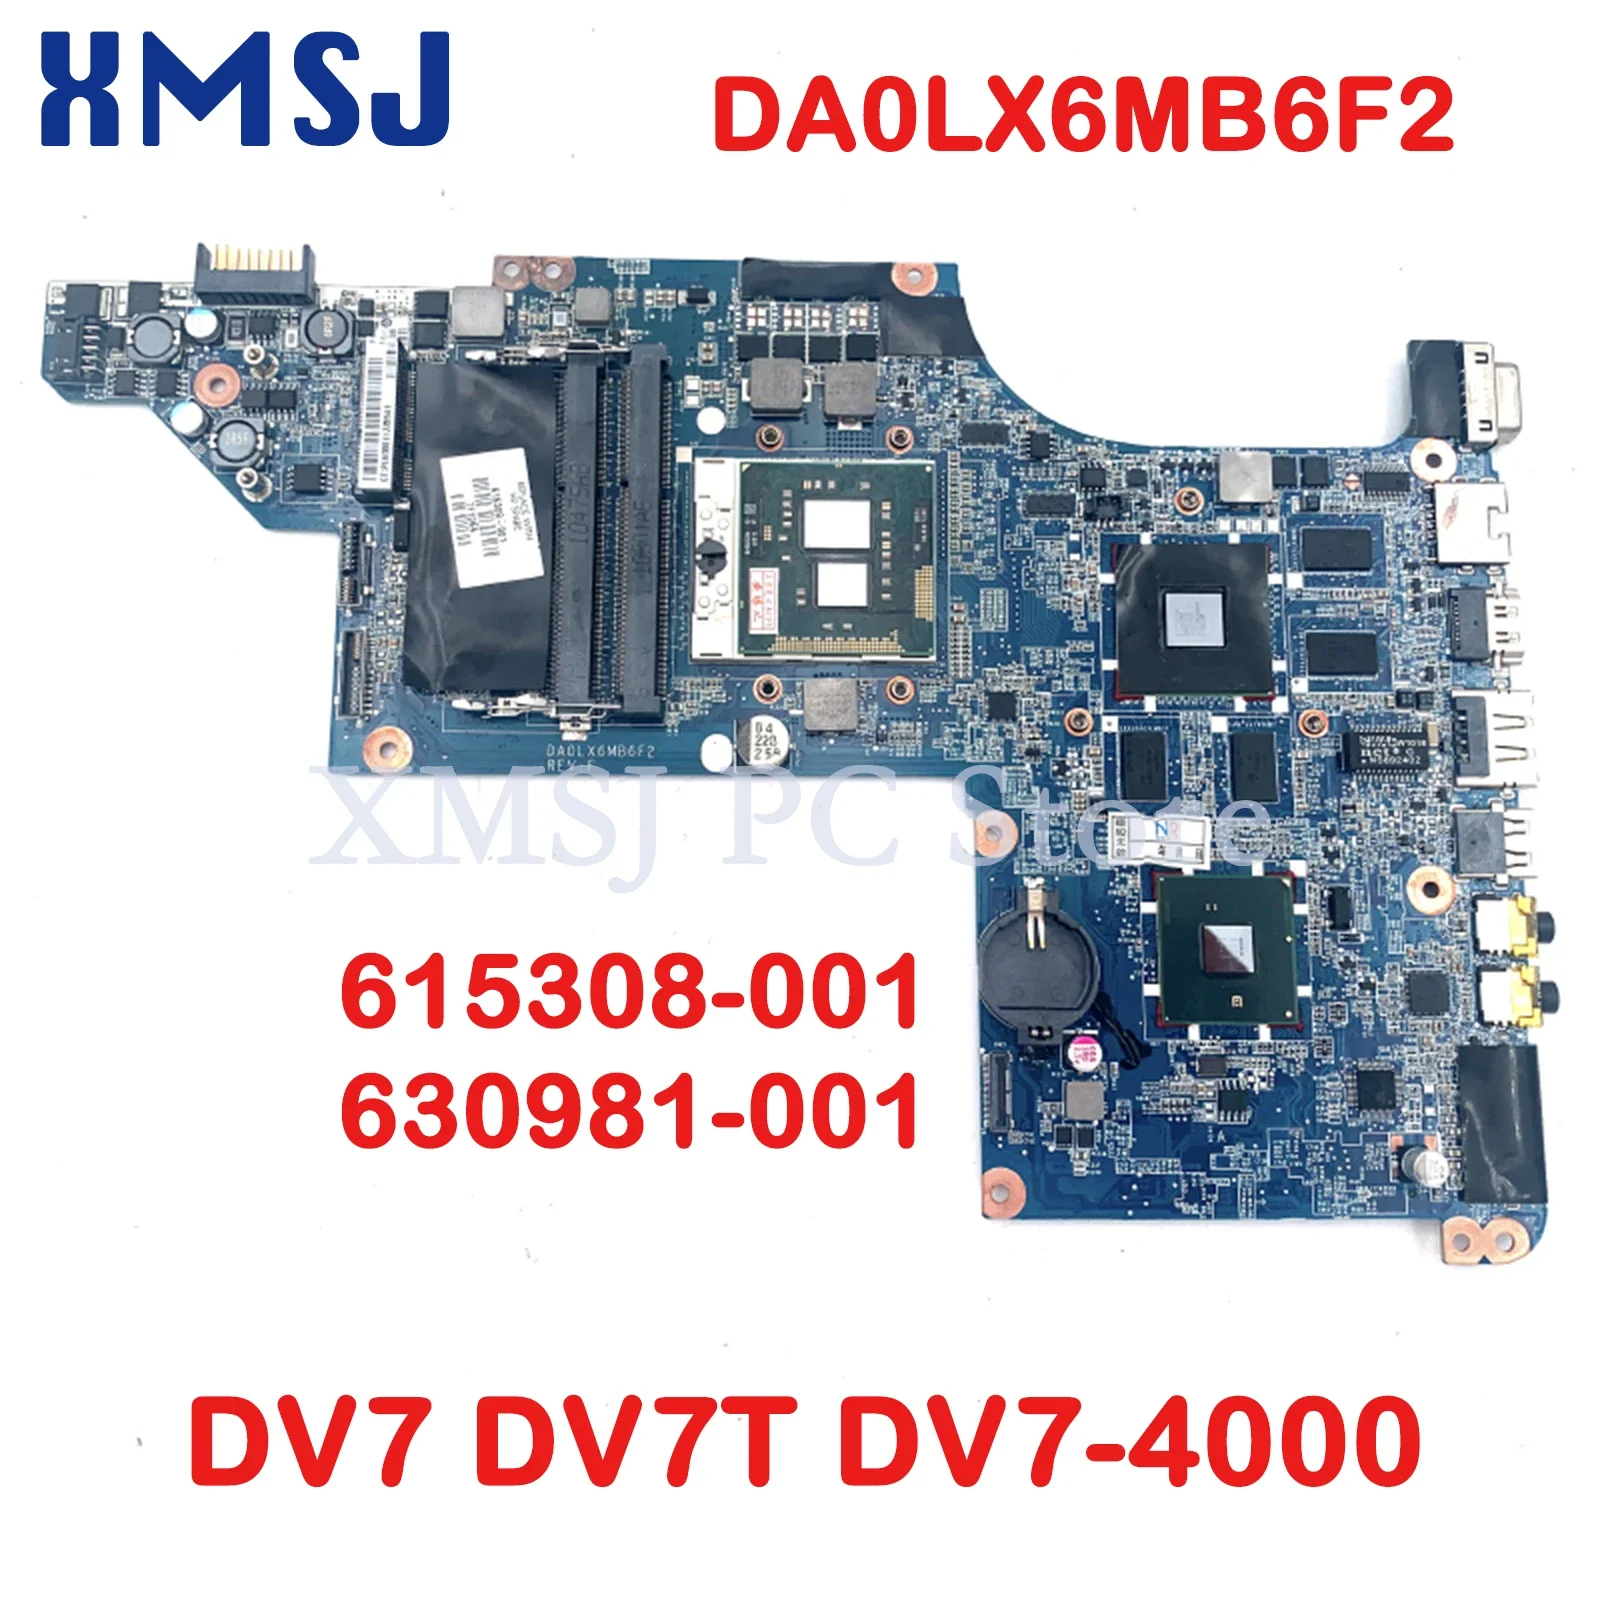 

XMSJ For HP Pavilion DV7 DV7T DV7-4000 Laptop Motherboard 615308-001 630981-001 DA0LX6MB6F2 HD5650M GPU HM55 DDR3 F1ree CPU